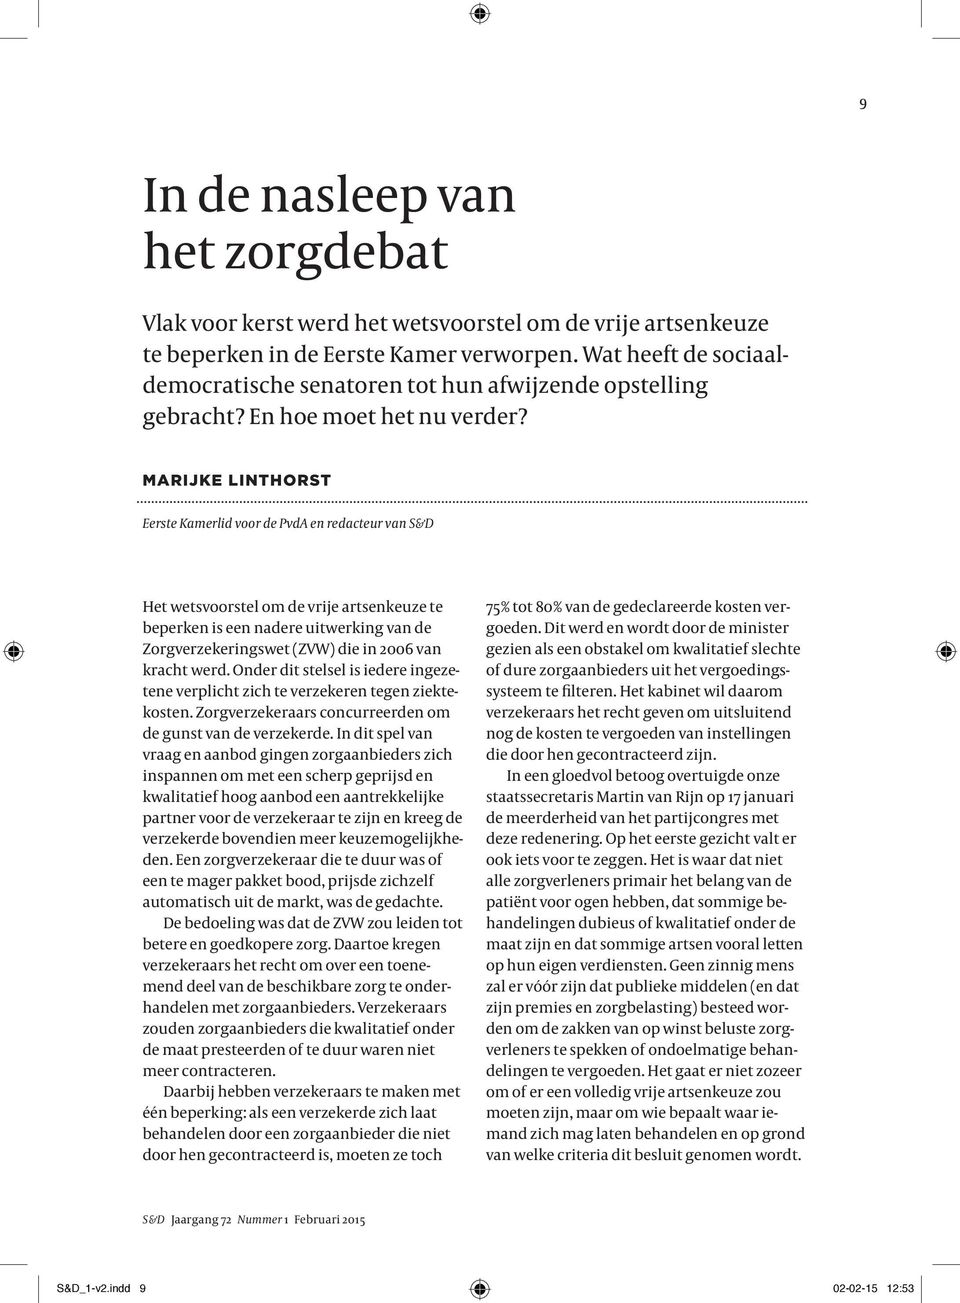 MARIJKE LINTHORST Eerste Kamerlid voor de PvdA en redacteur van S&D Het wetsvoorstel om de vrije artsenkeuze te beperken is een nadere uitwerking van de Zorgverzekeringswet (ZVW) die in 2006 van